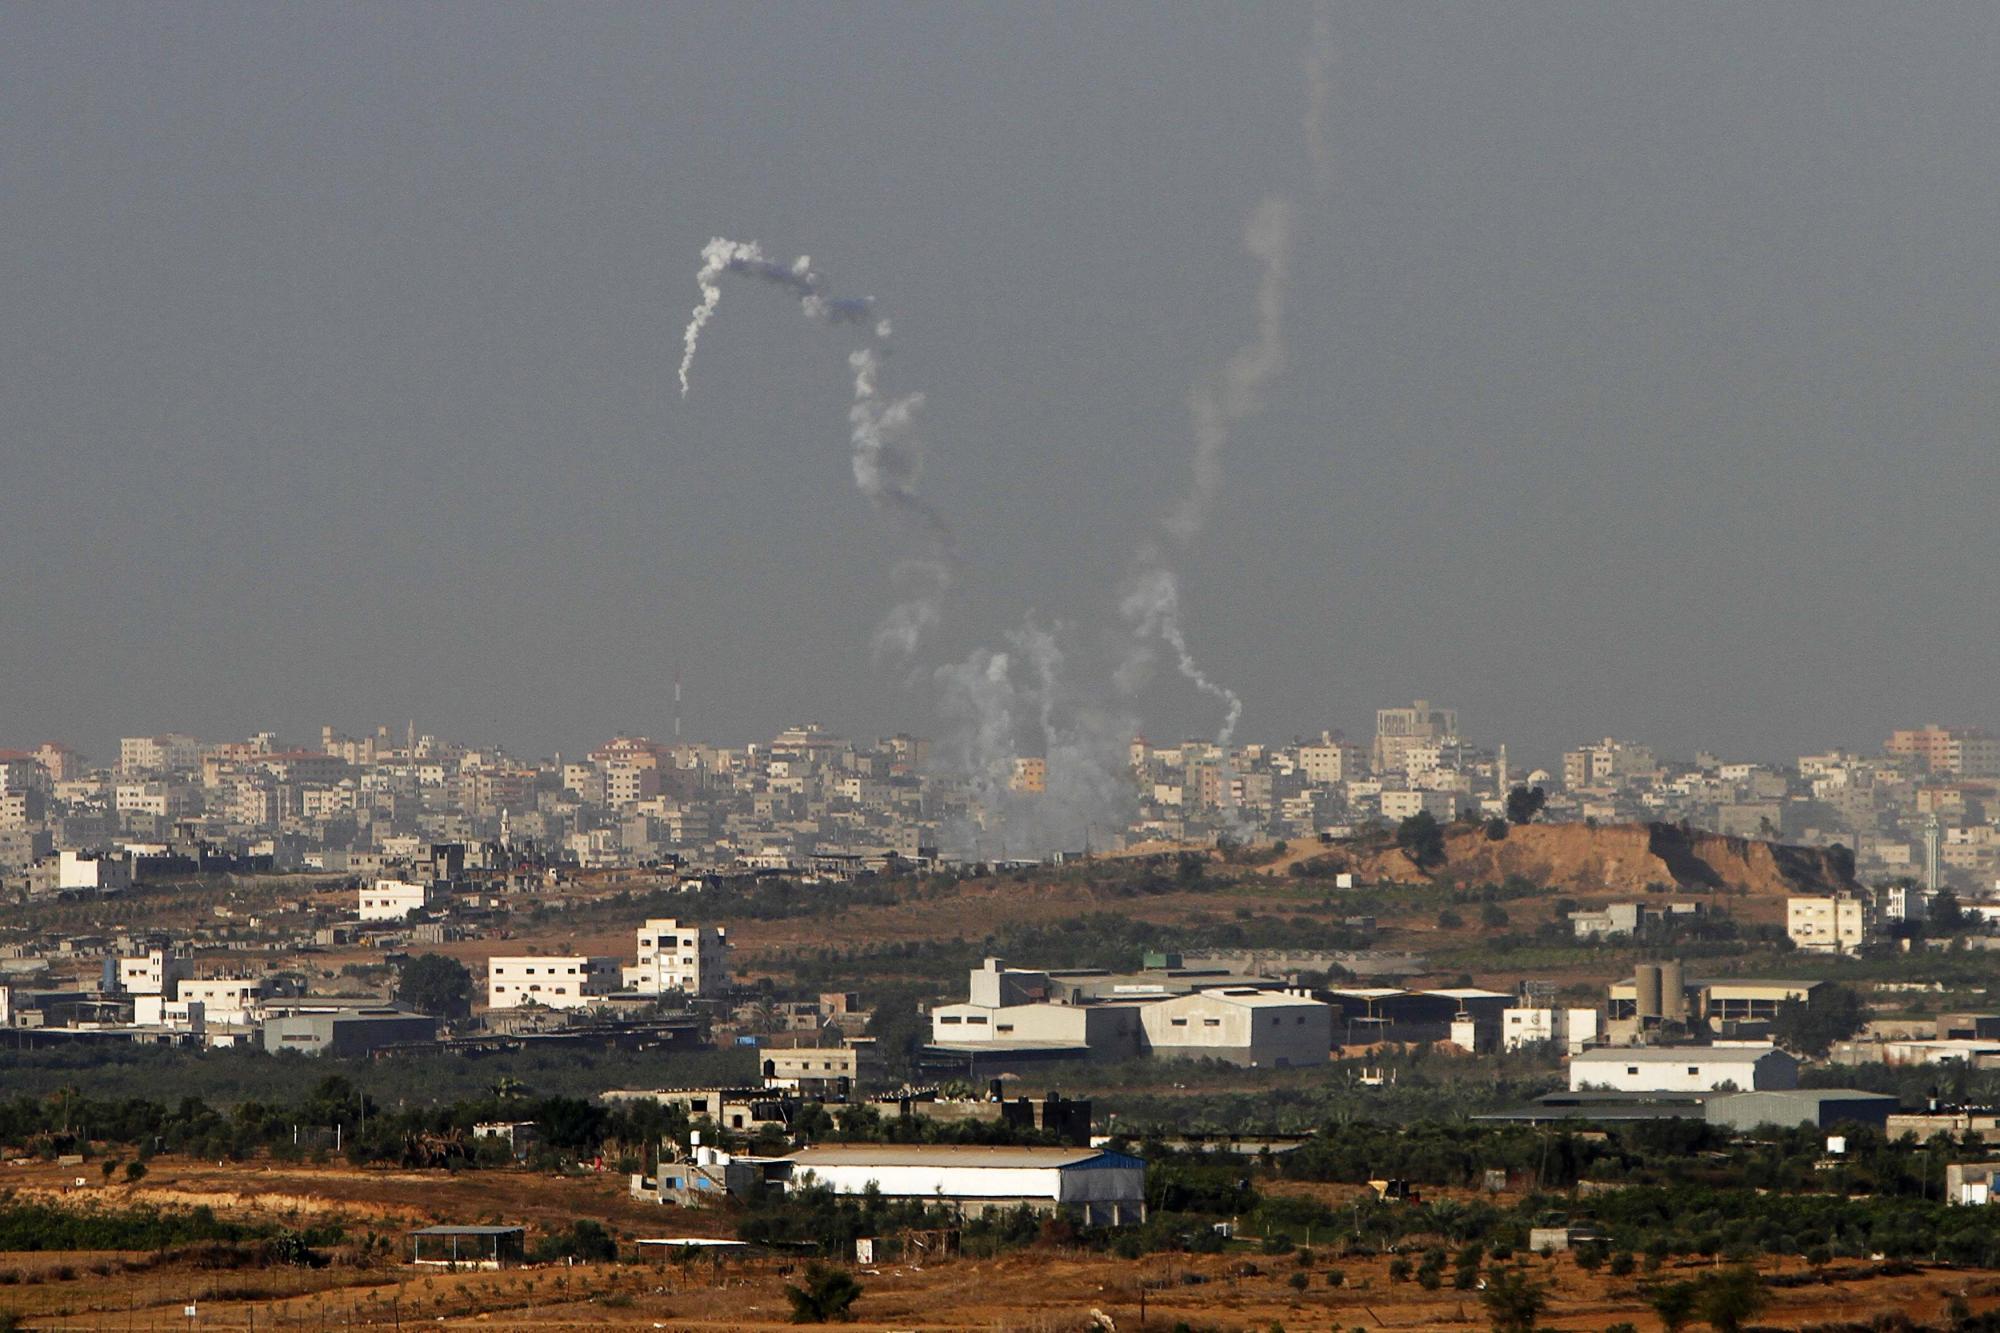 以色列暗示或出兵加沙 奥巴马重申反对巴勒斯坦“入联”